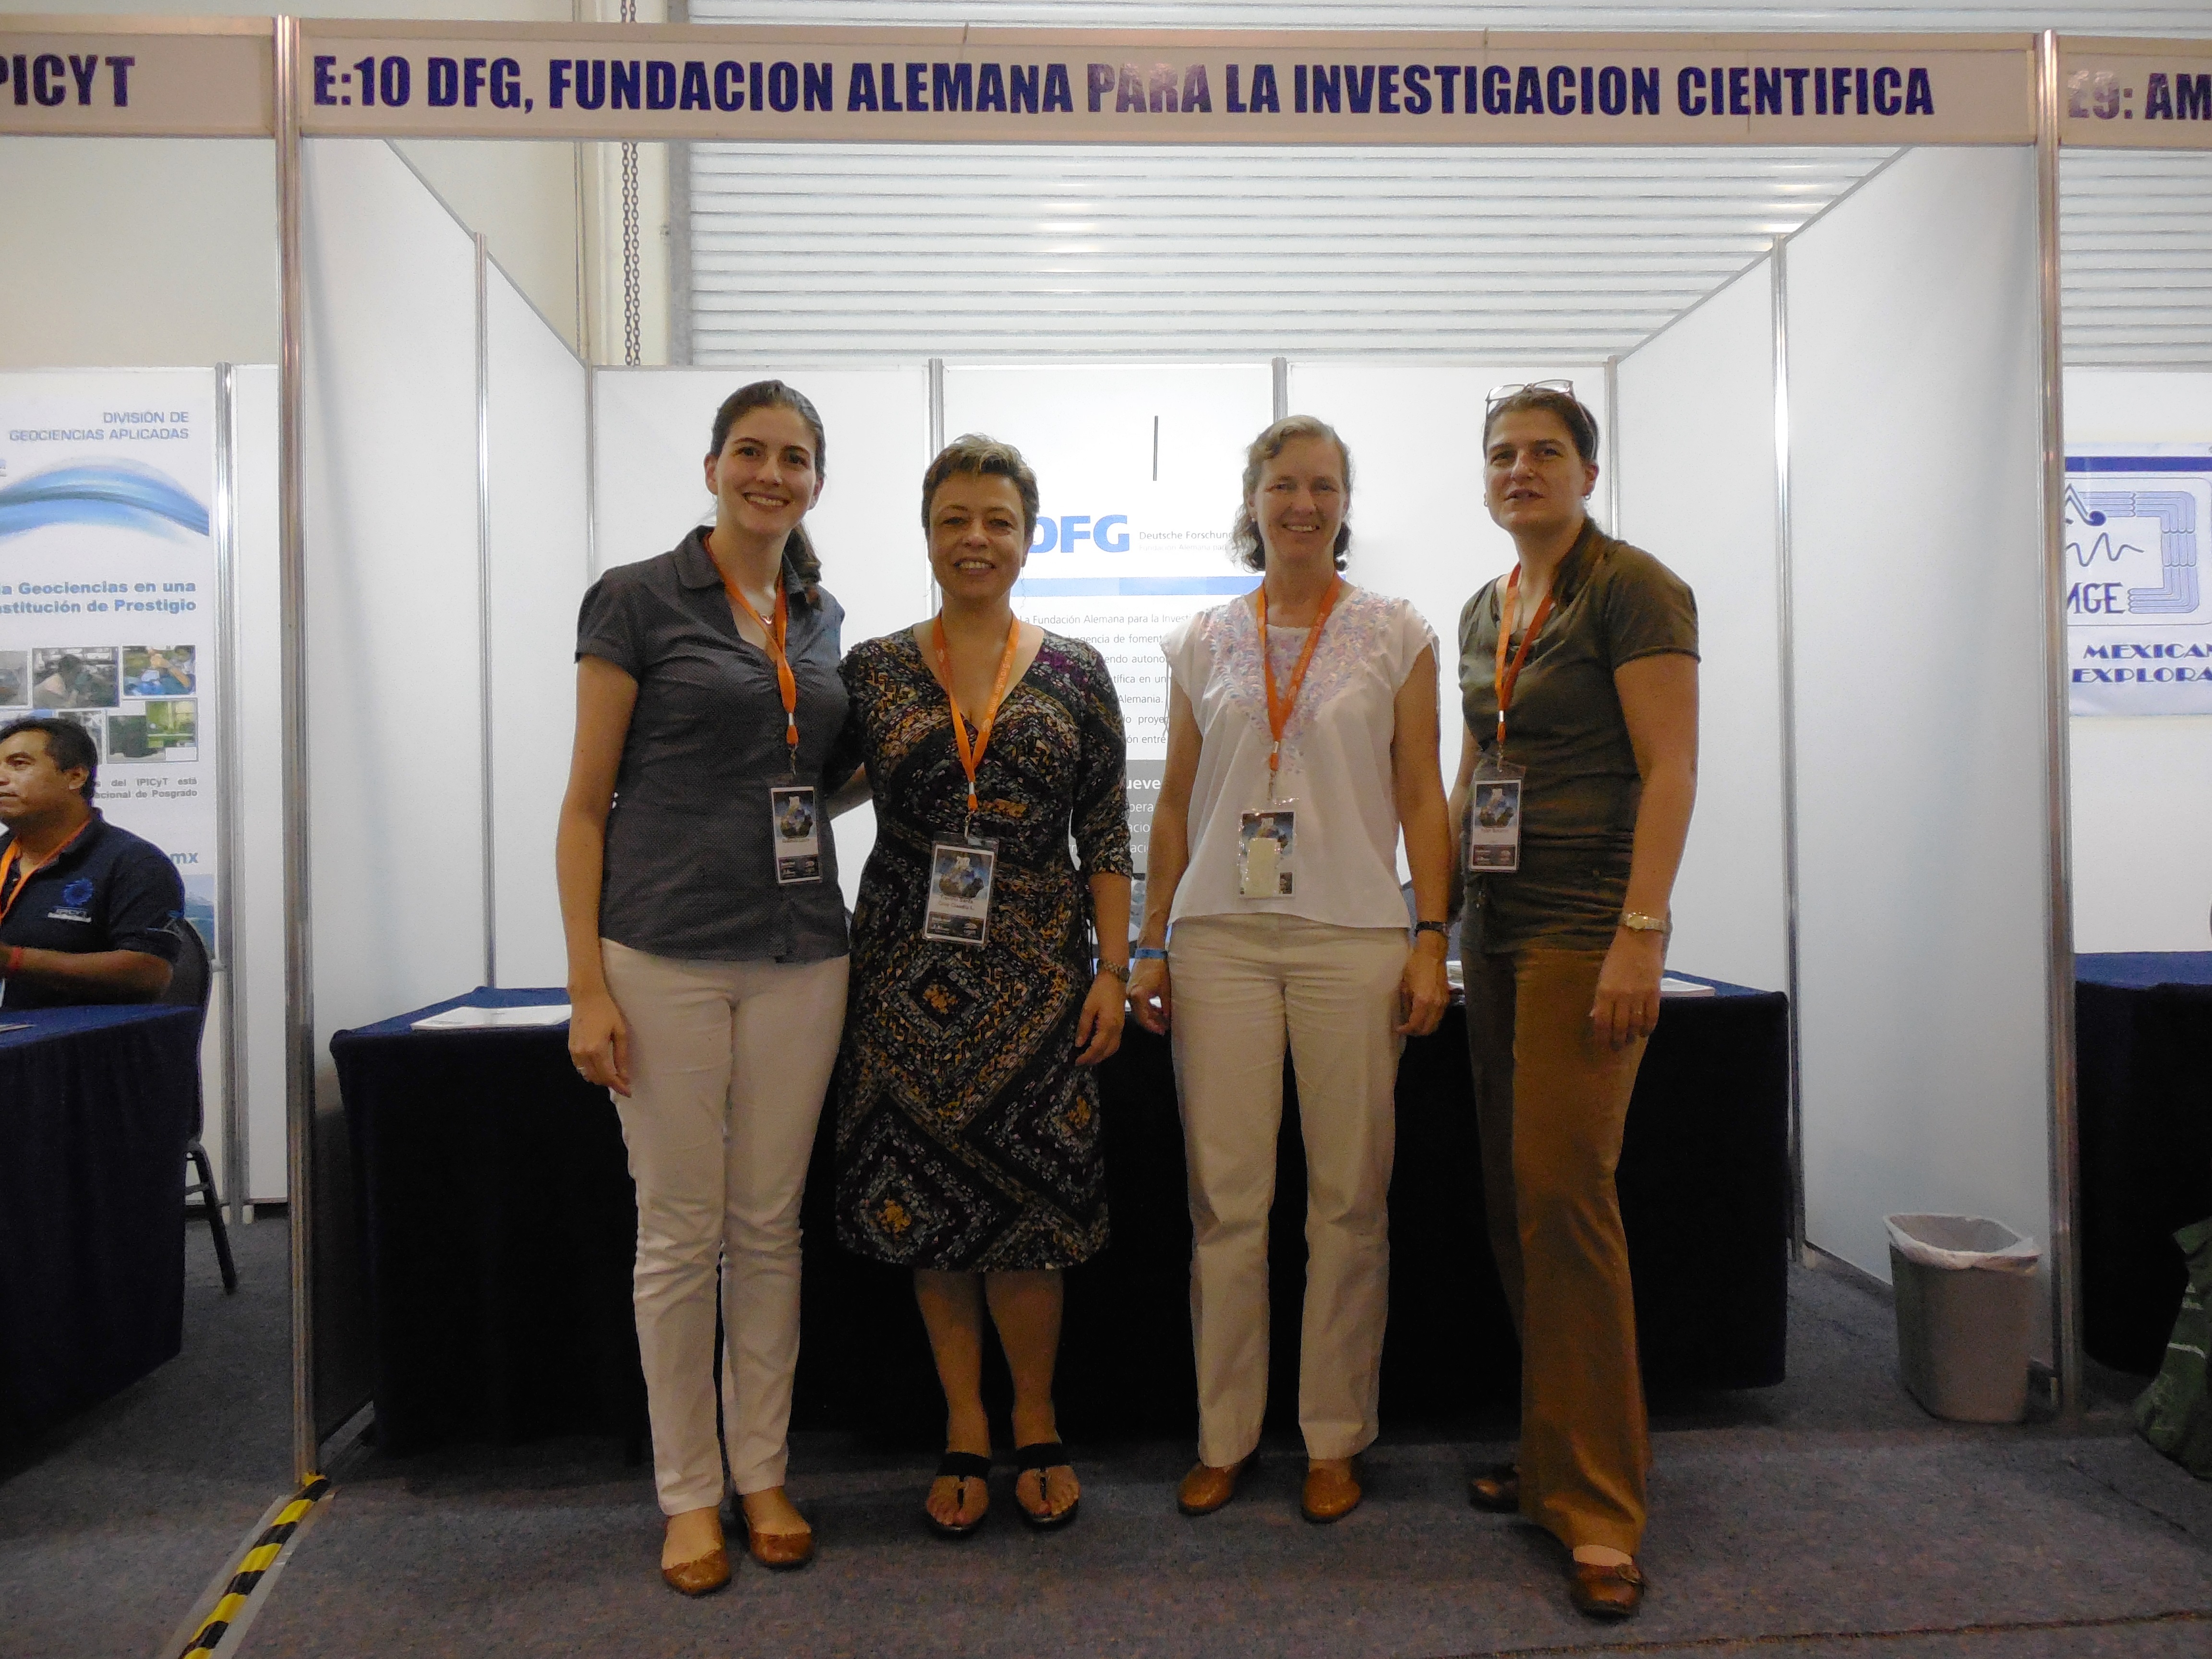 Em frente ao estande da DFG: Laura Redondo (DFG), Dra. Claudia Treviño (Fundação Humboldt), Dra. Christina Siebe (DFG) e Susanne Faber (DAAD)